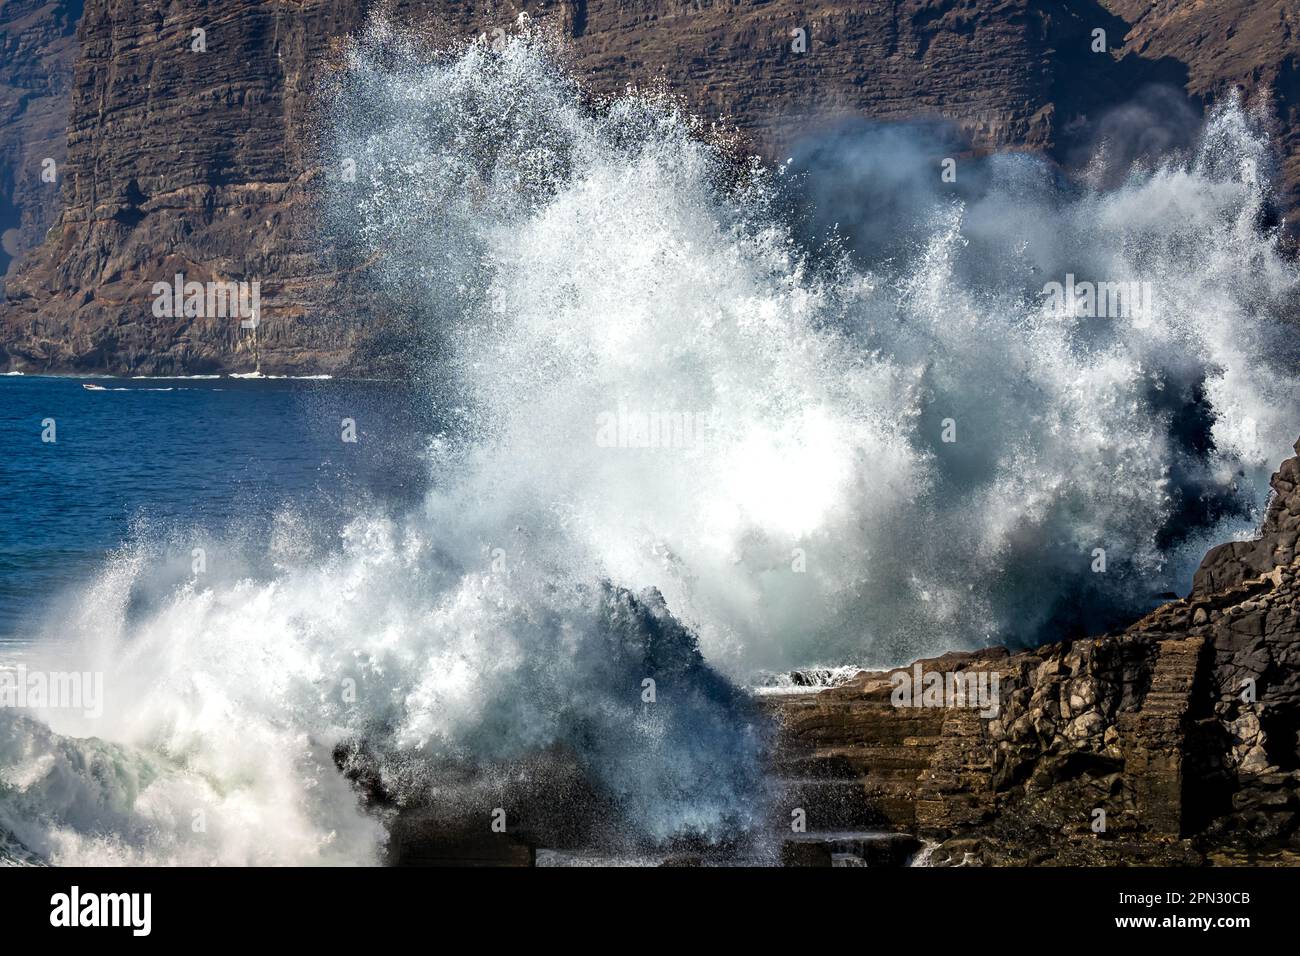 Il possente oceano invia un'onda massiccia che si schiantava contro la costa rocciosa, creando una spettacolare esposizione di potenza naturale all'Acantilados de los Gigantes Foto Stock